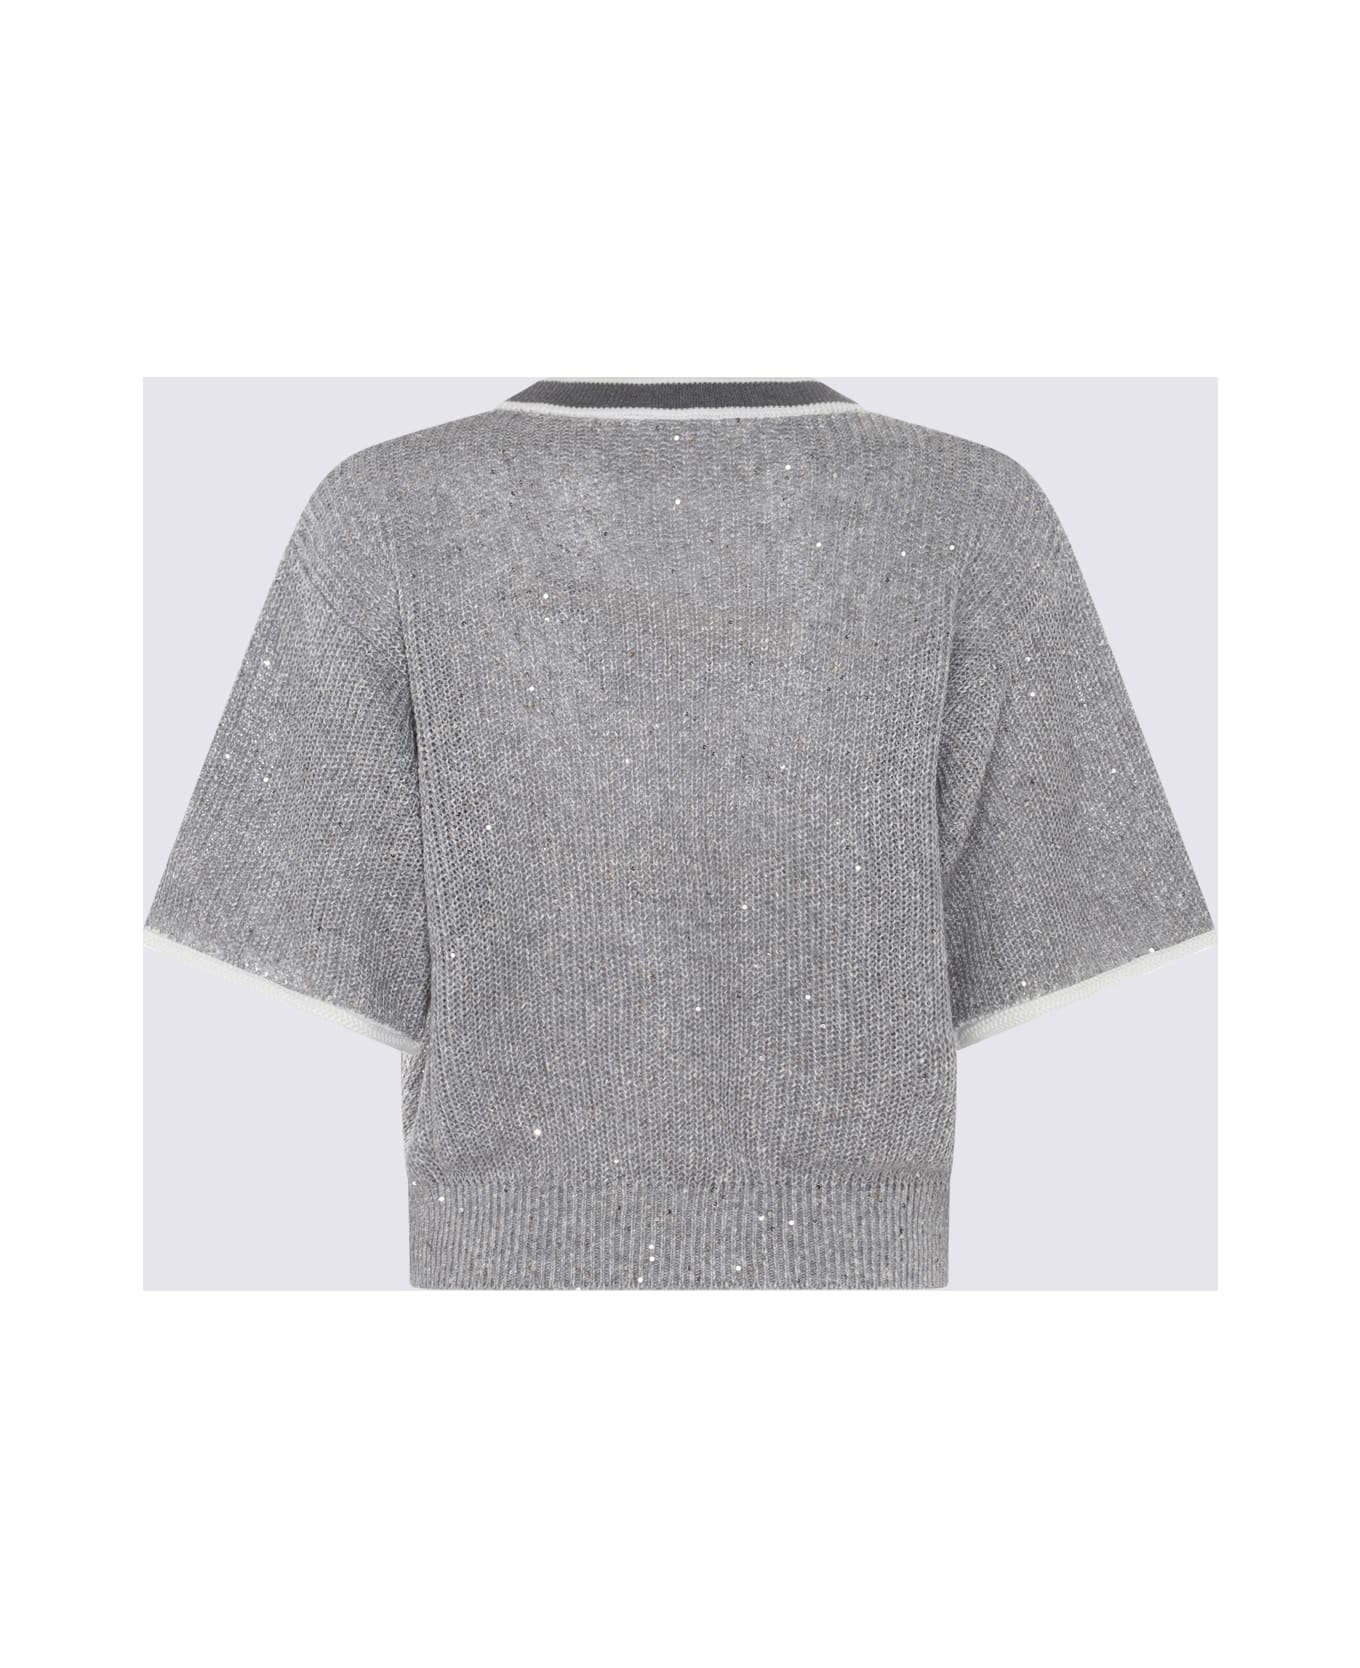 Brunello Cucinelli Mid Grey Linen Blend Sweater - GRIGIO MEDIO